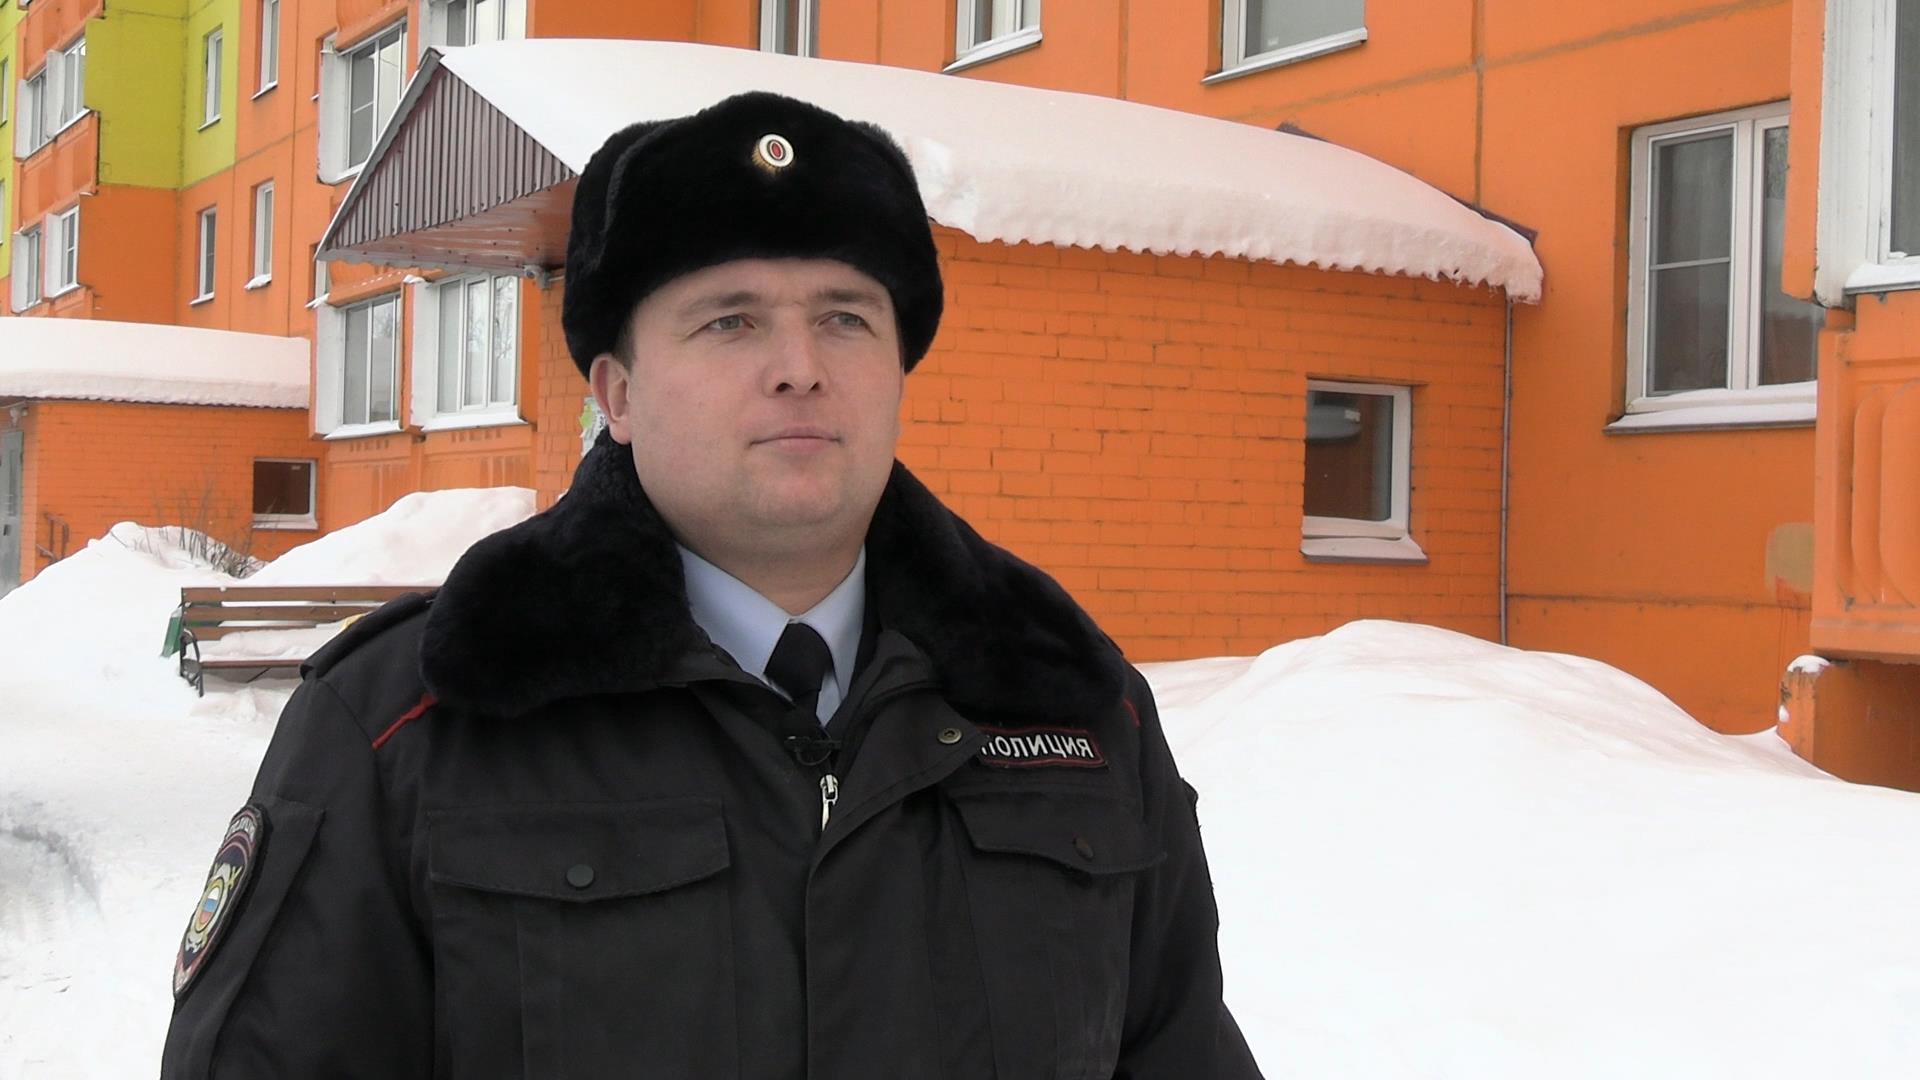 Кировский полицейский вытащил из горящей квартиры пенсионера без сознания